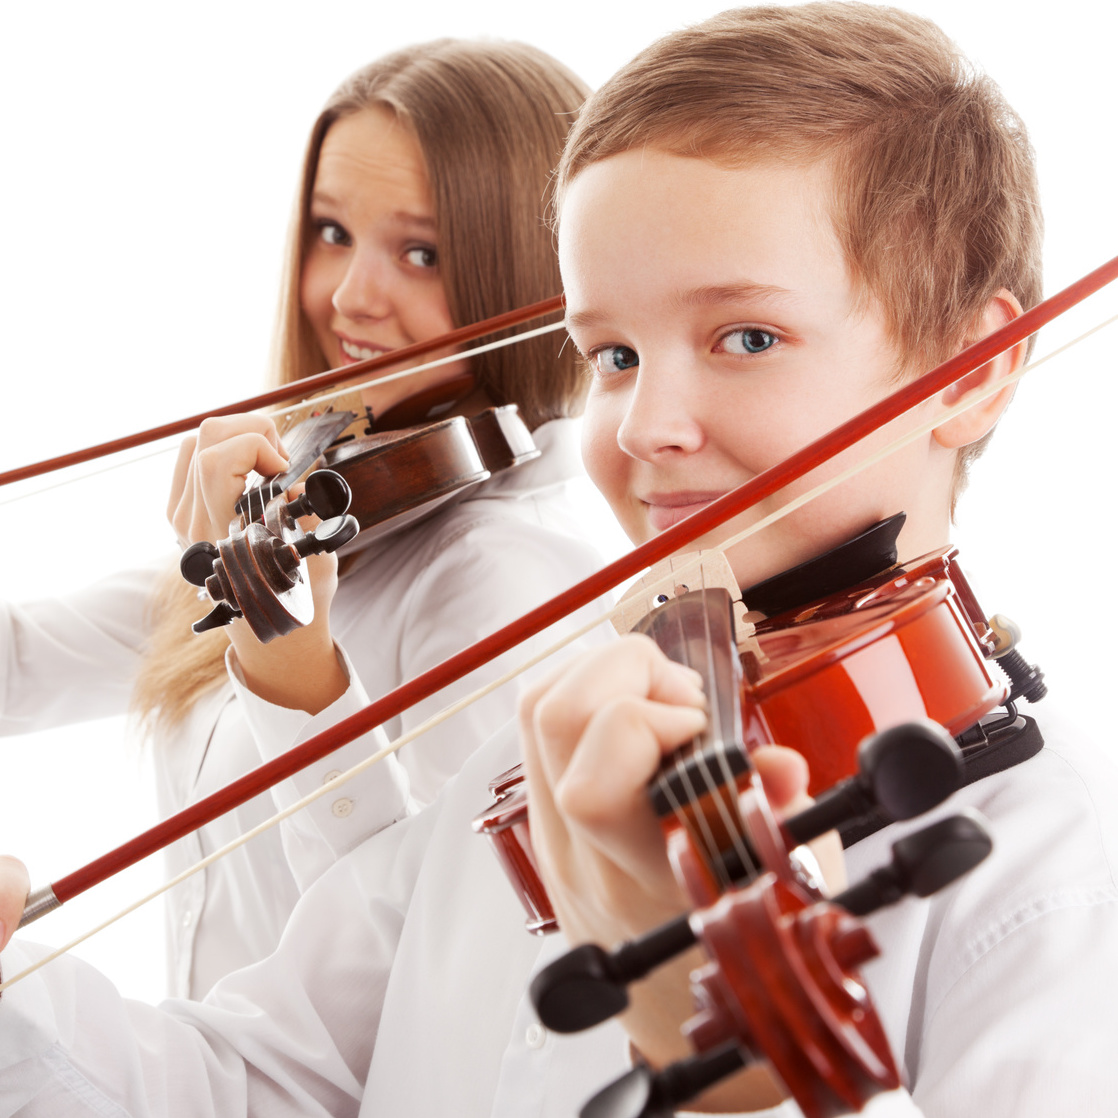 My brother played the violin. Игра на скрипке. Музыкальные инструменты для детей. Скрипка для детей. Дети играющие на музыкальных инструментах.